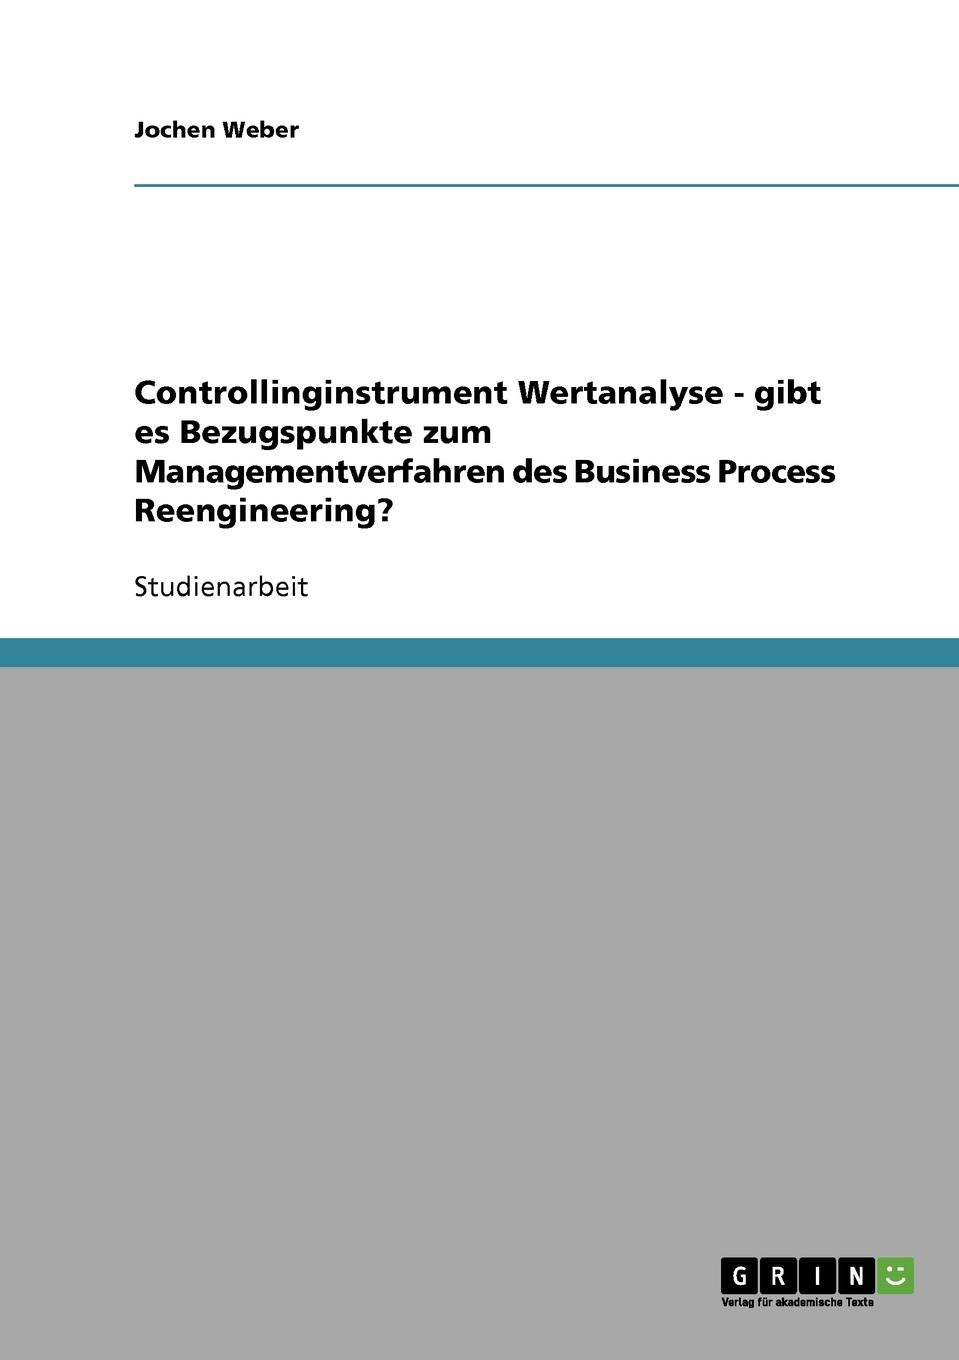 фото Controllinginstrument Wertanalyse - gibt es Bezugspunkte zum Managementverfahren des Business Process Reengineering.